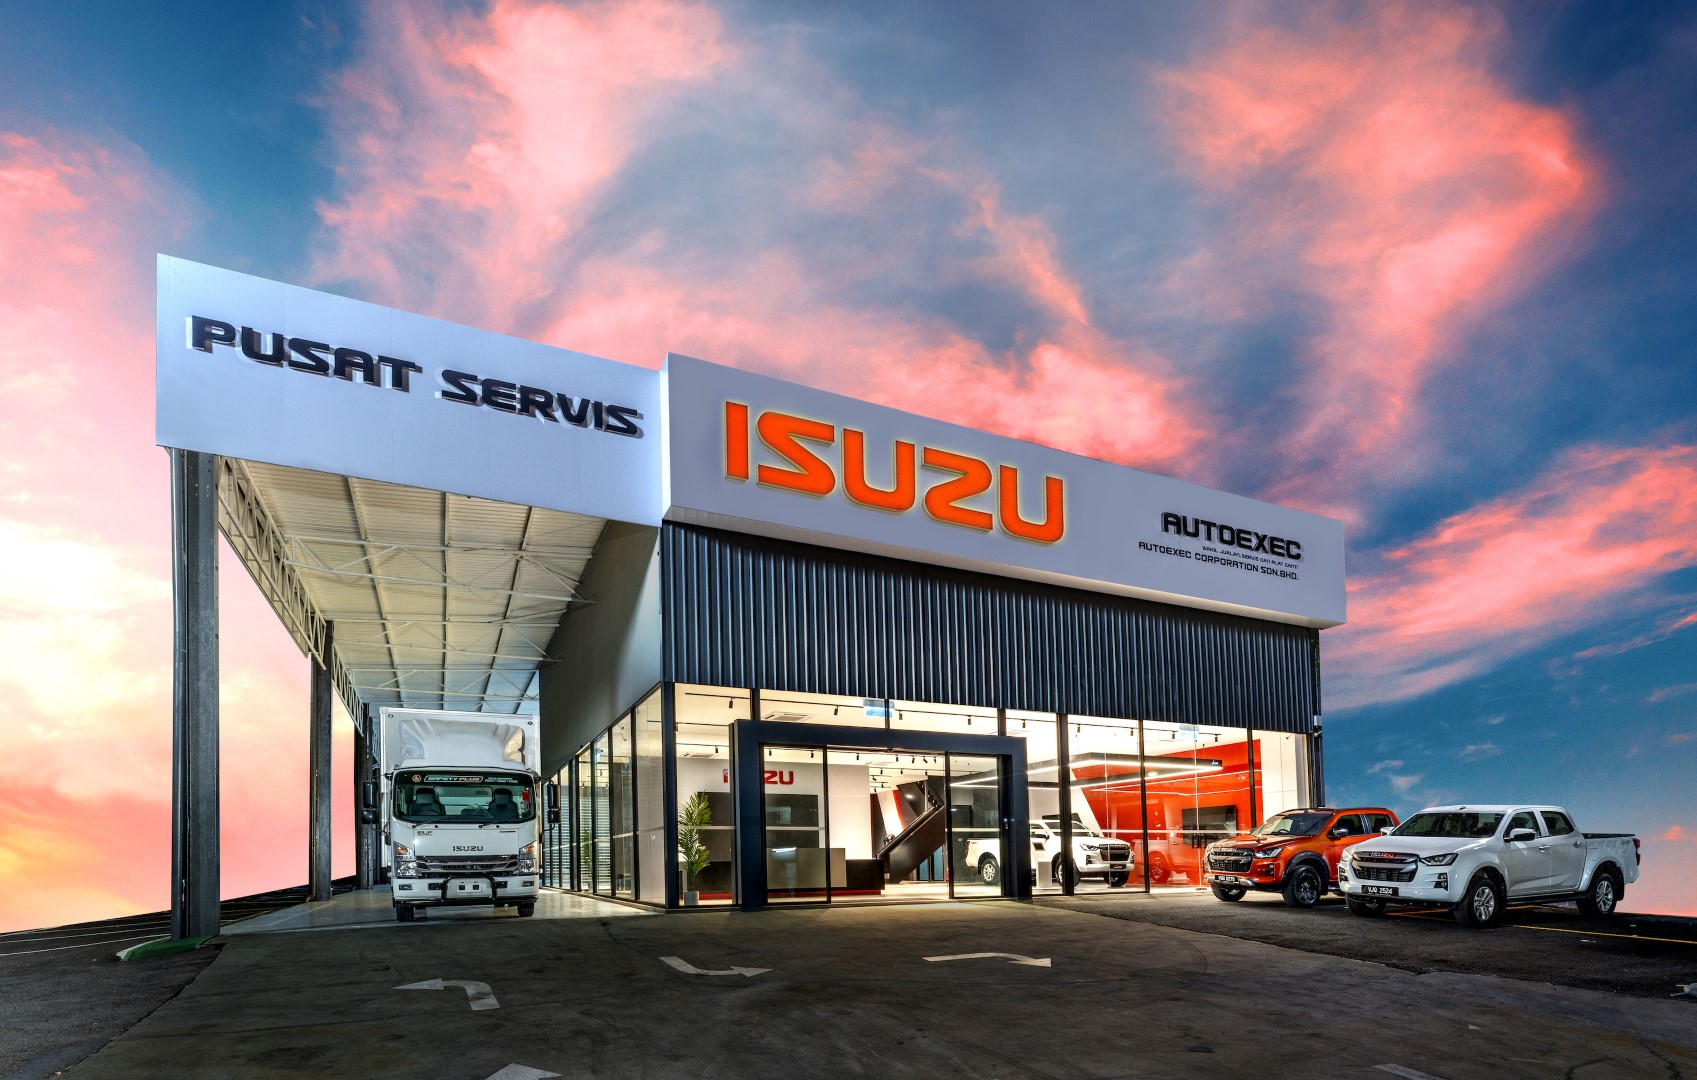 Isuzu New 3S Centre